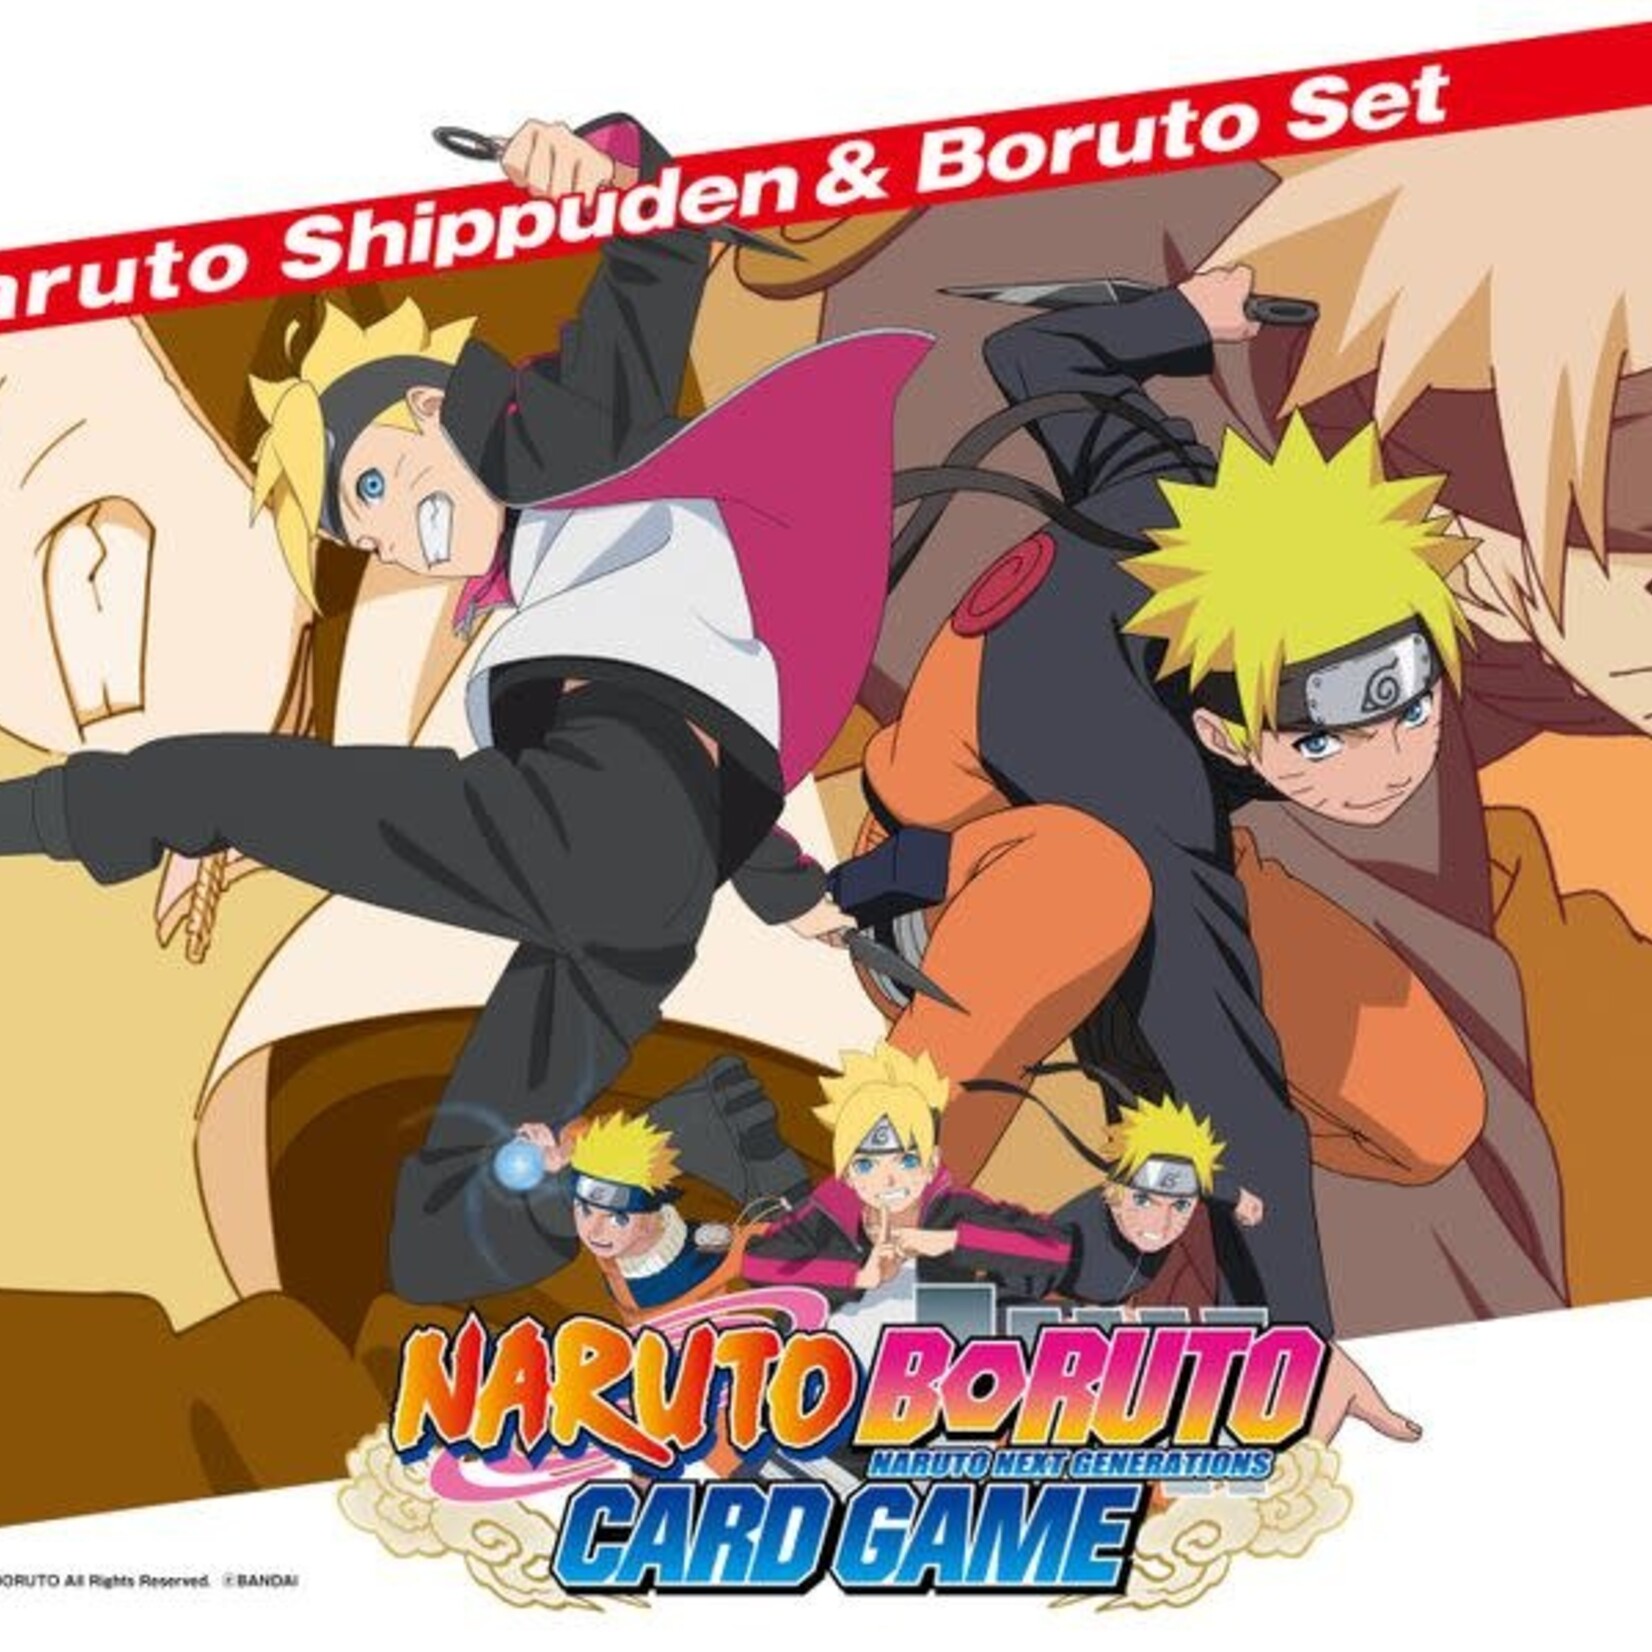 Bandai Naruto Boruto 2-Player Card Game: Naruto Shippuden & Boruto Set